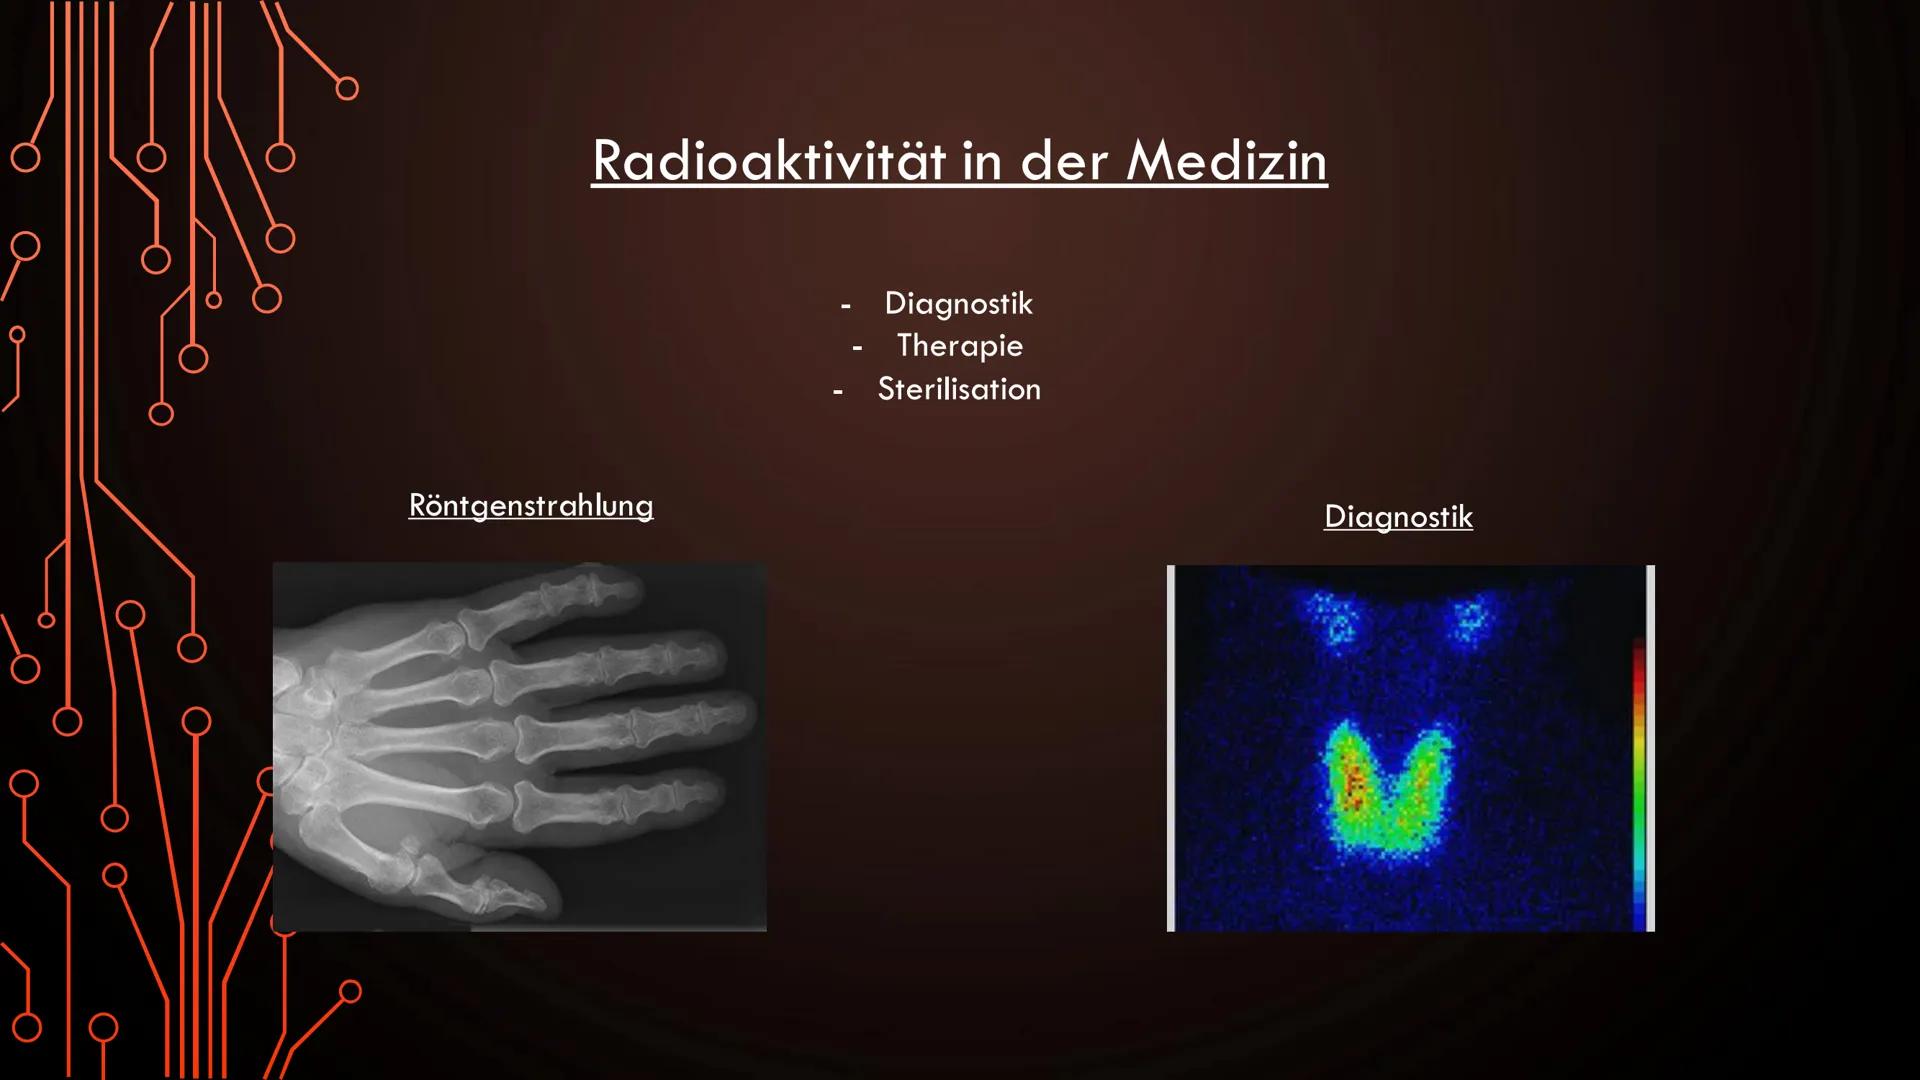 Radioaktivität in der Medizin
Röntgenstrahlung
Diagnostik
Therapie
Sterilisation
Diagnostik Allgemeine Informationen:
●
Oft bei der Schilddr